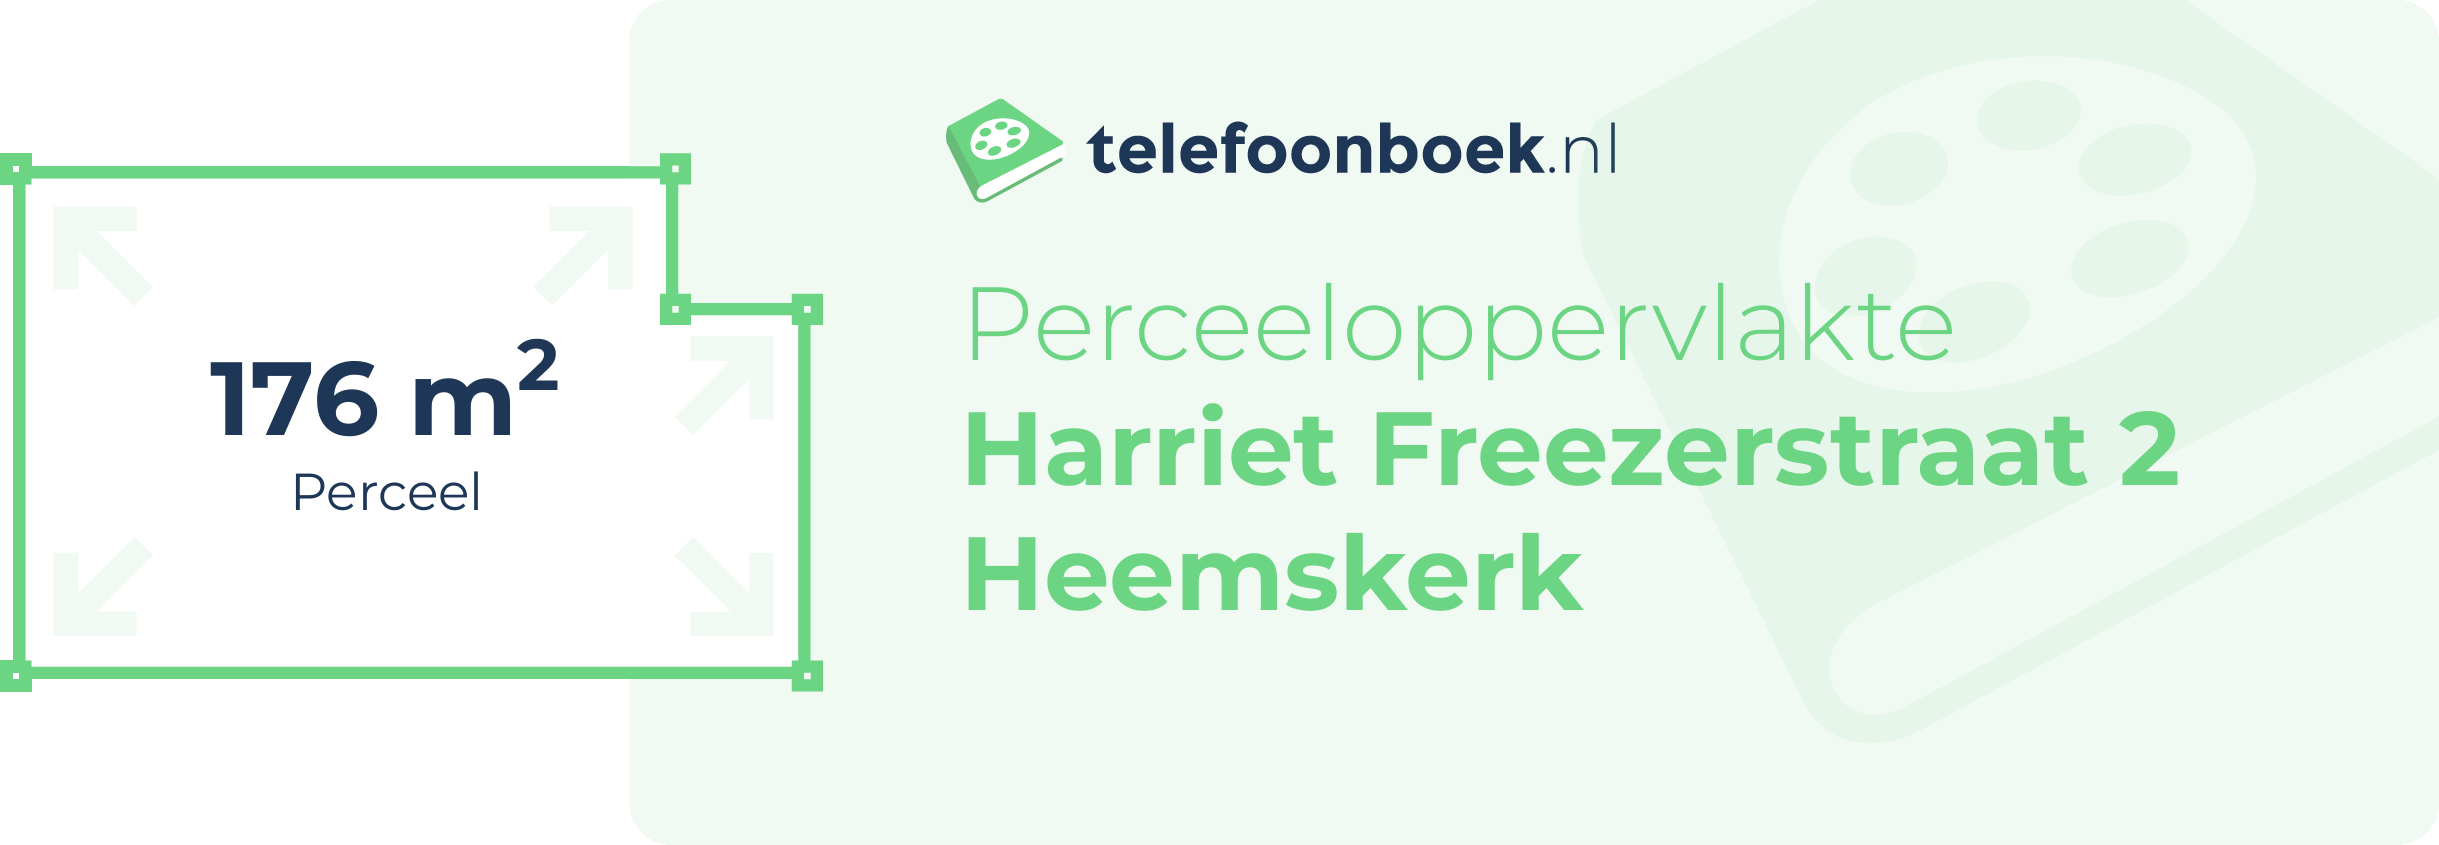 Perceeloppervlakte Harriet Freezerstraat 2 Heemskerk